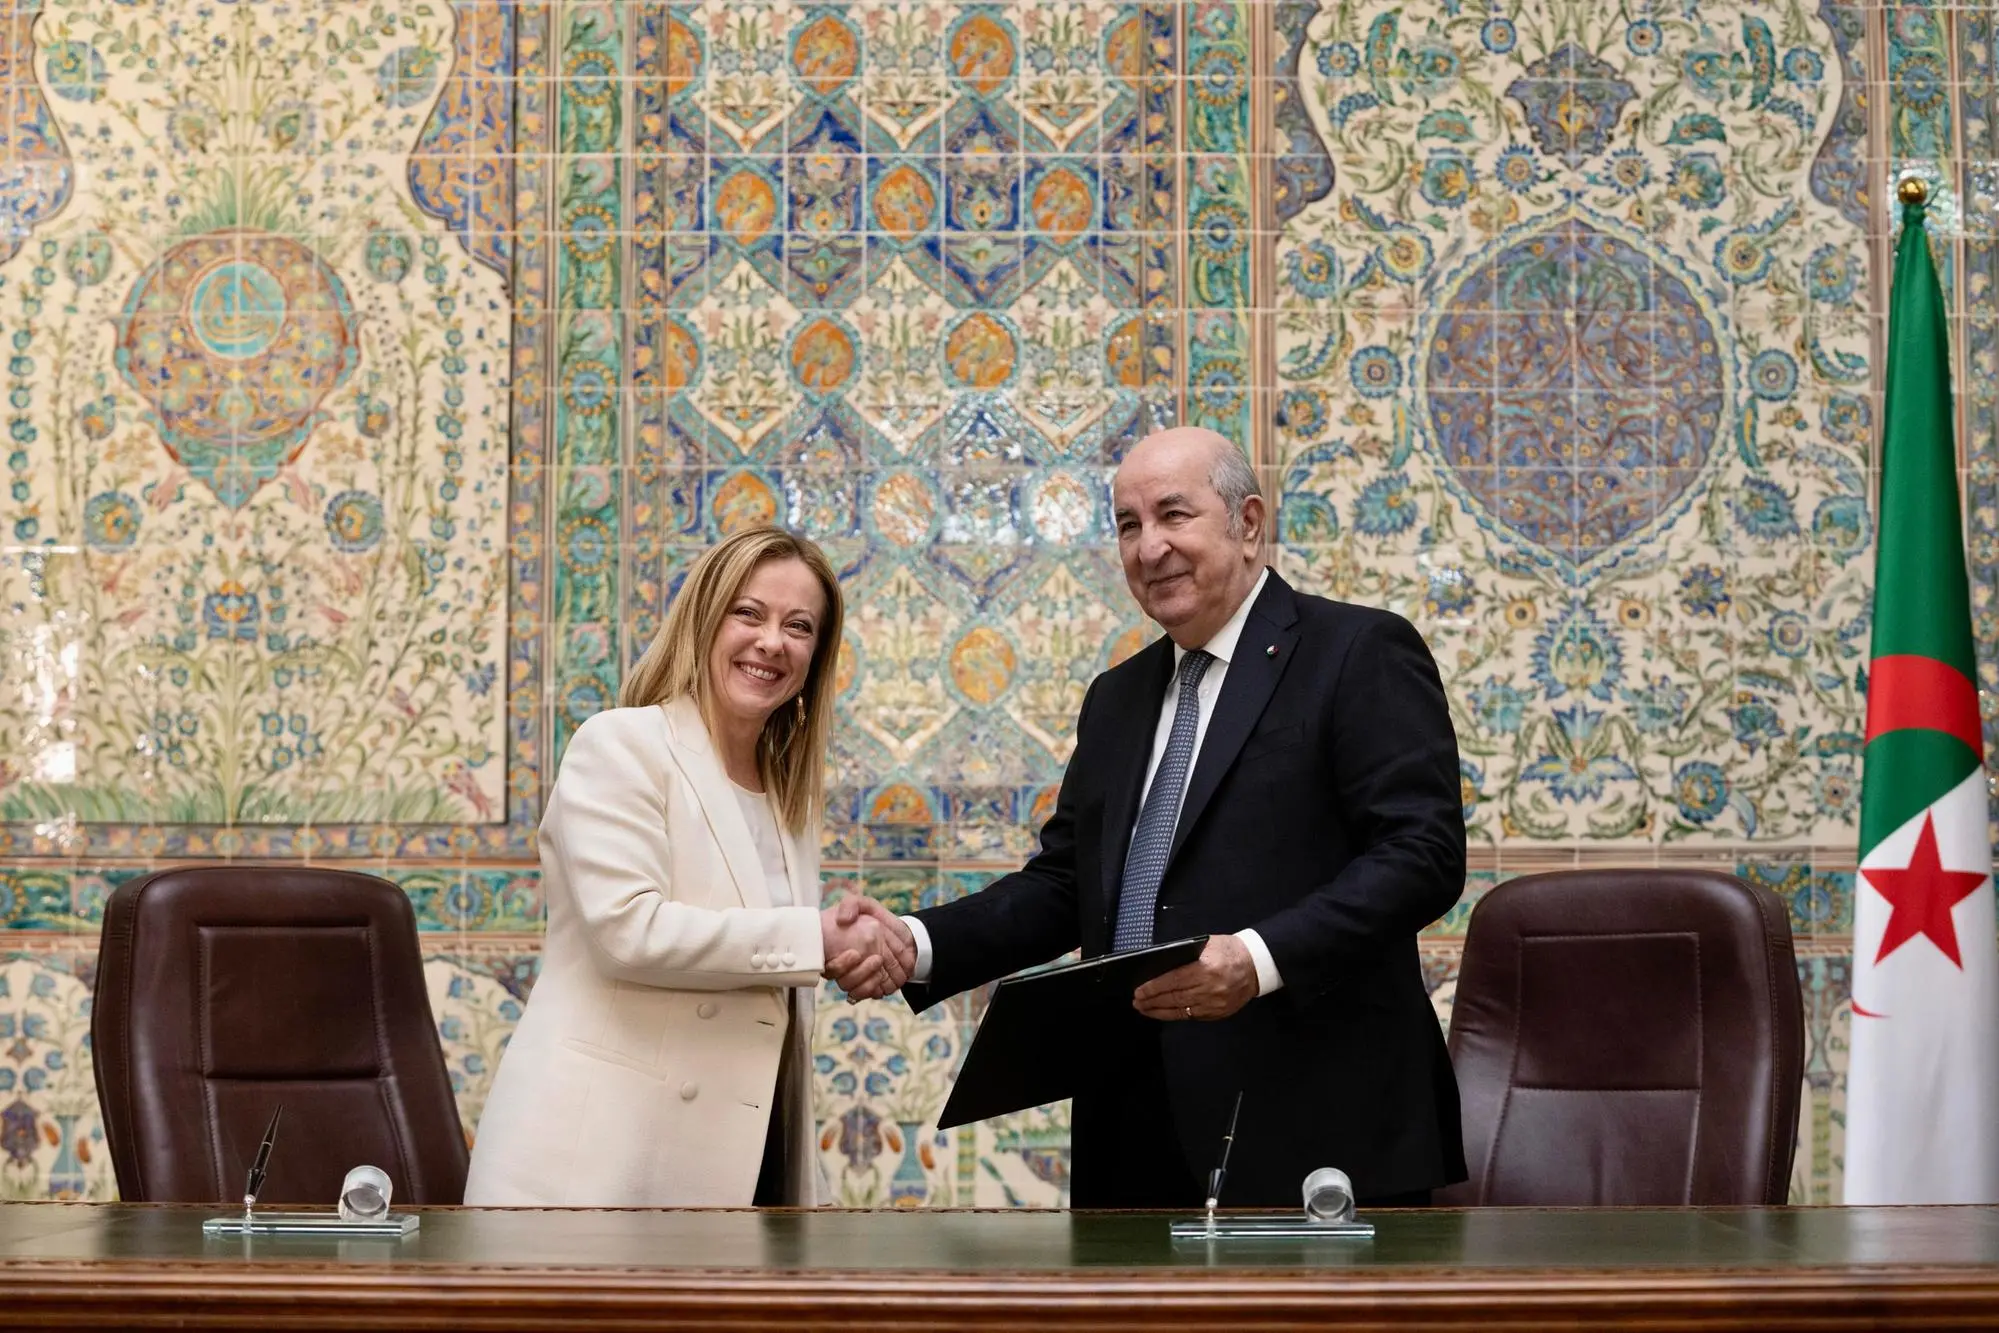 Рукопожатие между Джорджией Мелони и алжирским лидером (Анса)